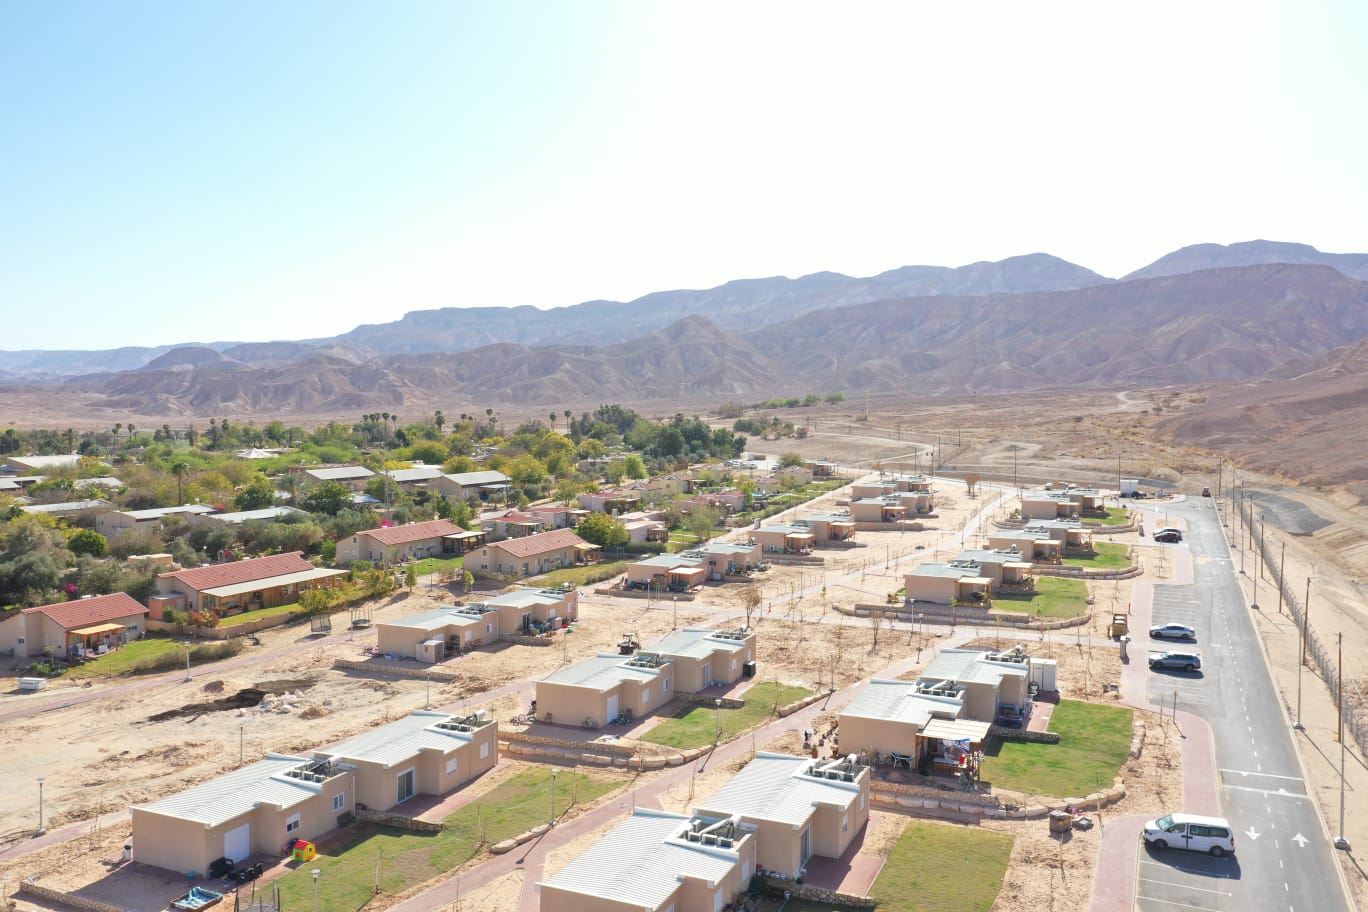 פתרון למצוקת הדיור בערבה הדרומית: הושלם מיזם הקמתן של 120 יחידות דיור חדשות בקיבוצי חבל אילות